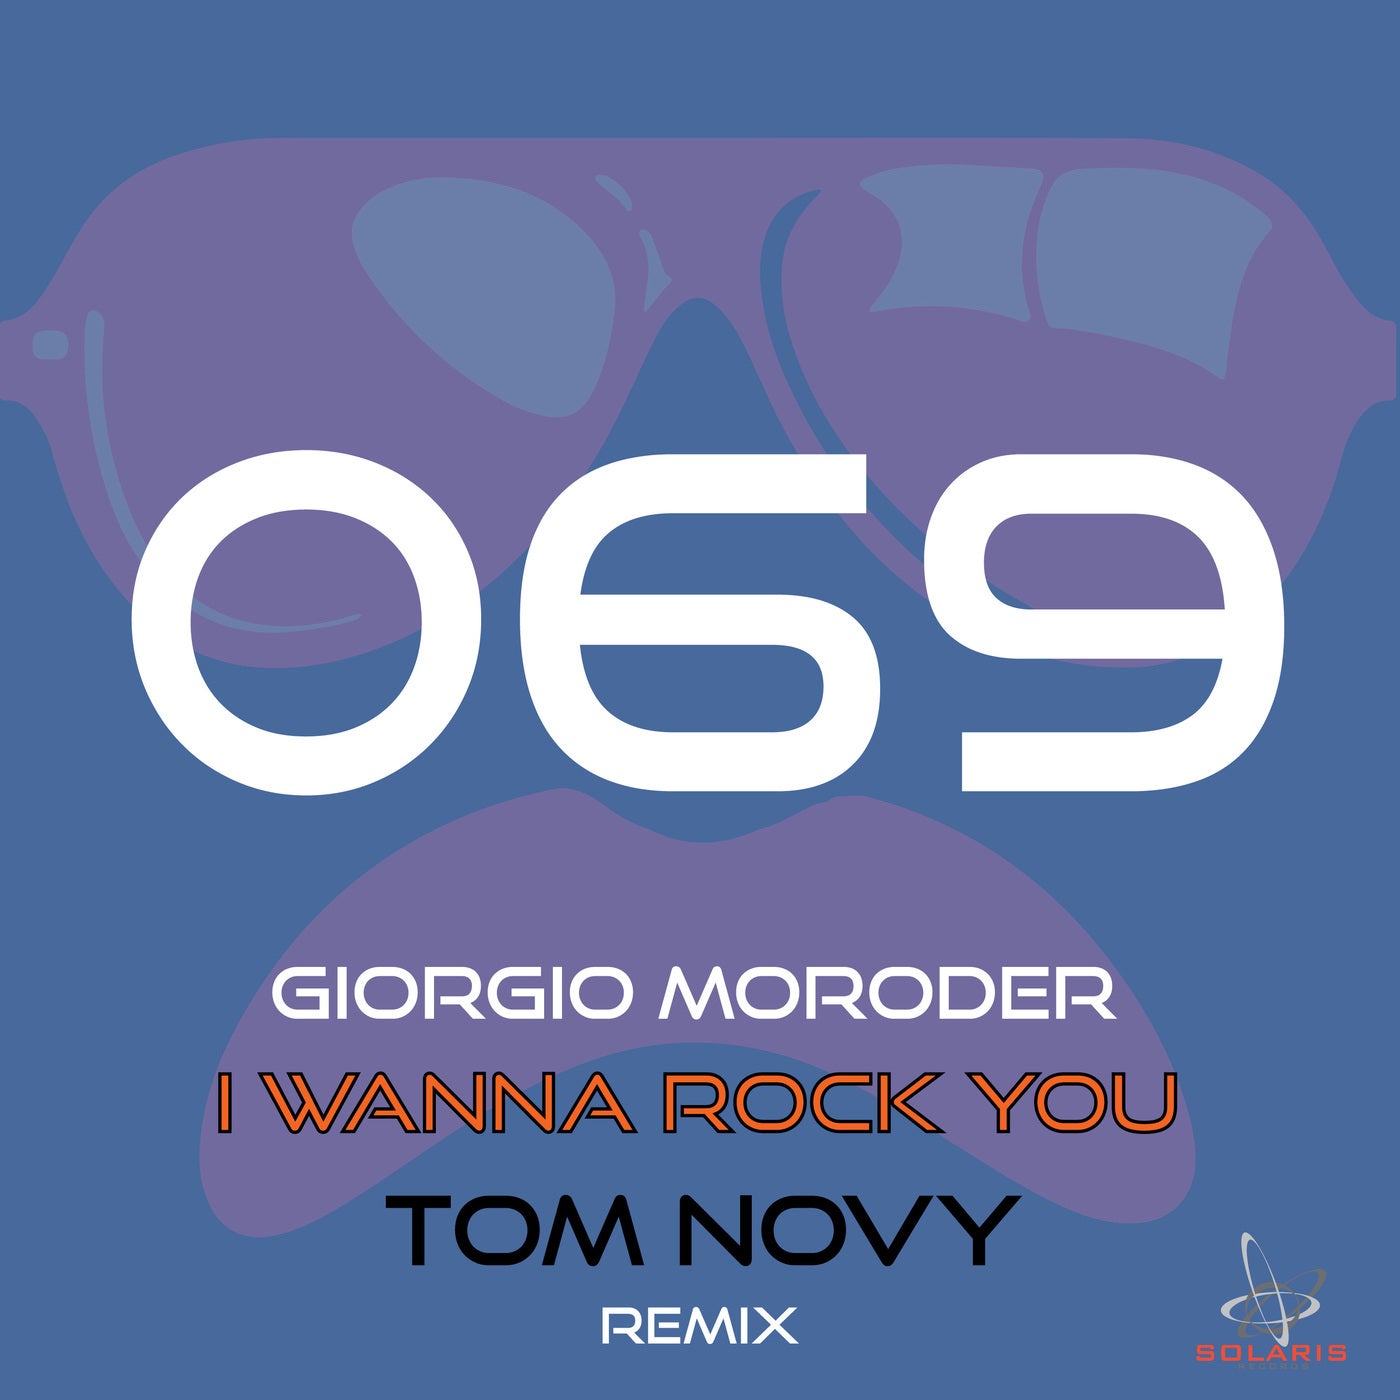 Tom novy. Giorgio Moroder i wanna Rock you. Джорджио диско Никос бэнг. Песня Giorgio Disco. Песня Георгио диско на каплм языке?.